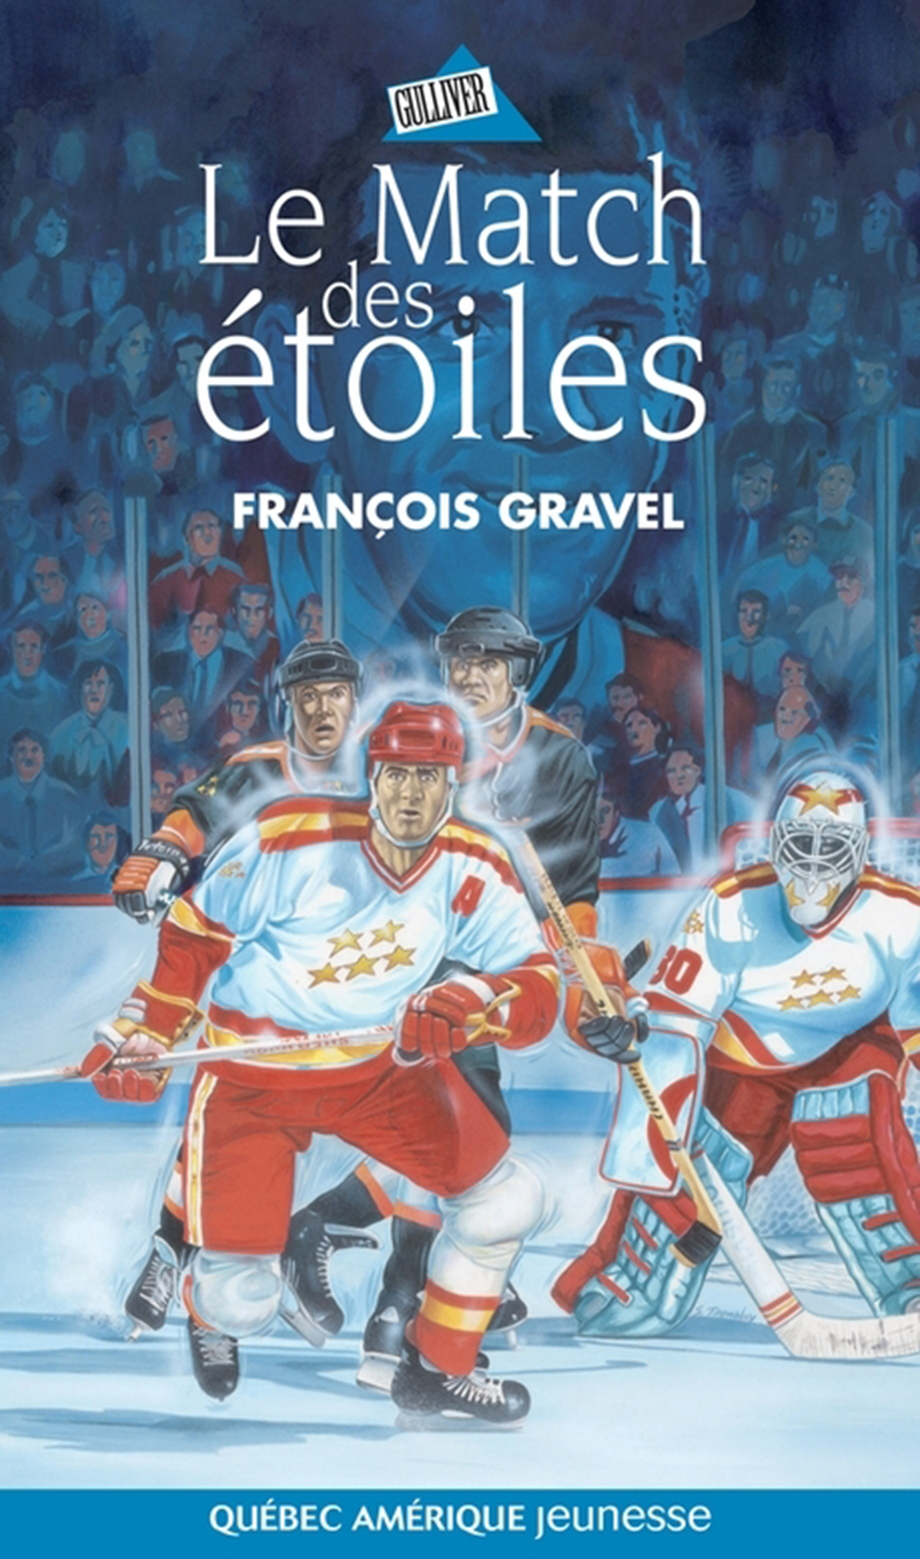 Le Match des étoiles de François Gravel